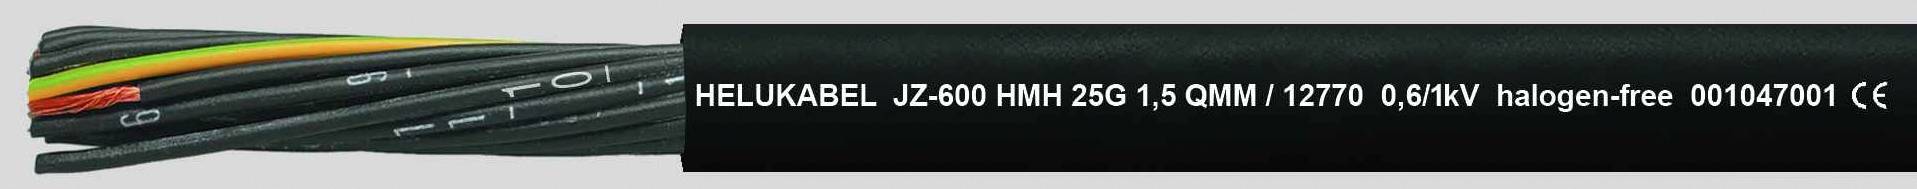 HELUKABEL JZ-600 HMH Steuerleitung 4 G 0.75 mm² Schwarz 12738-1000 1000 m